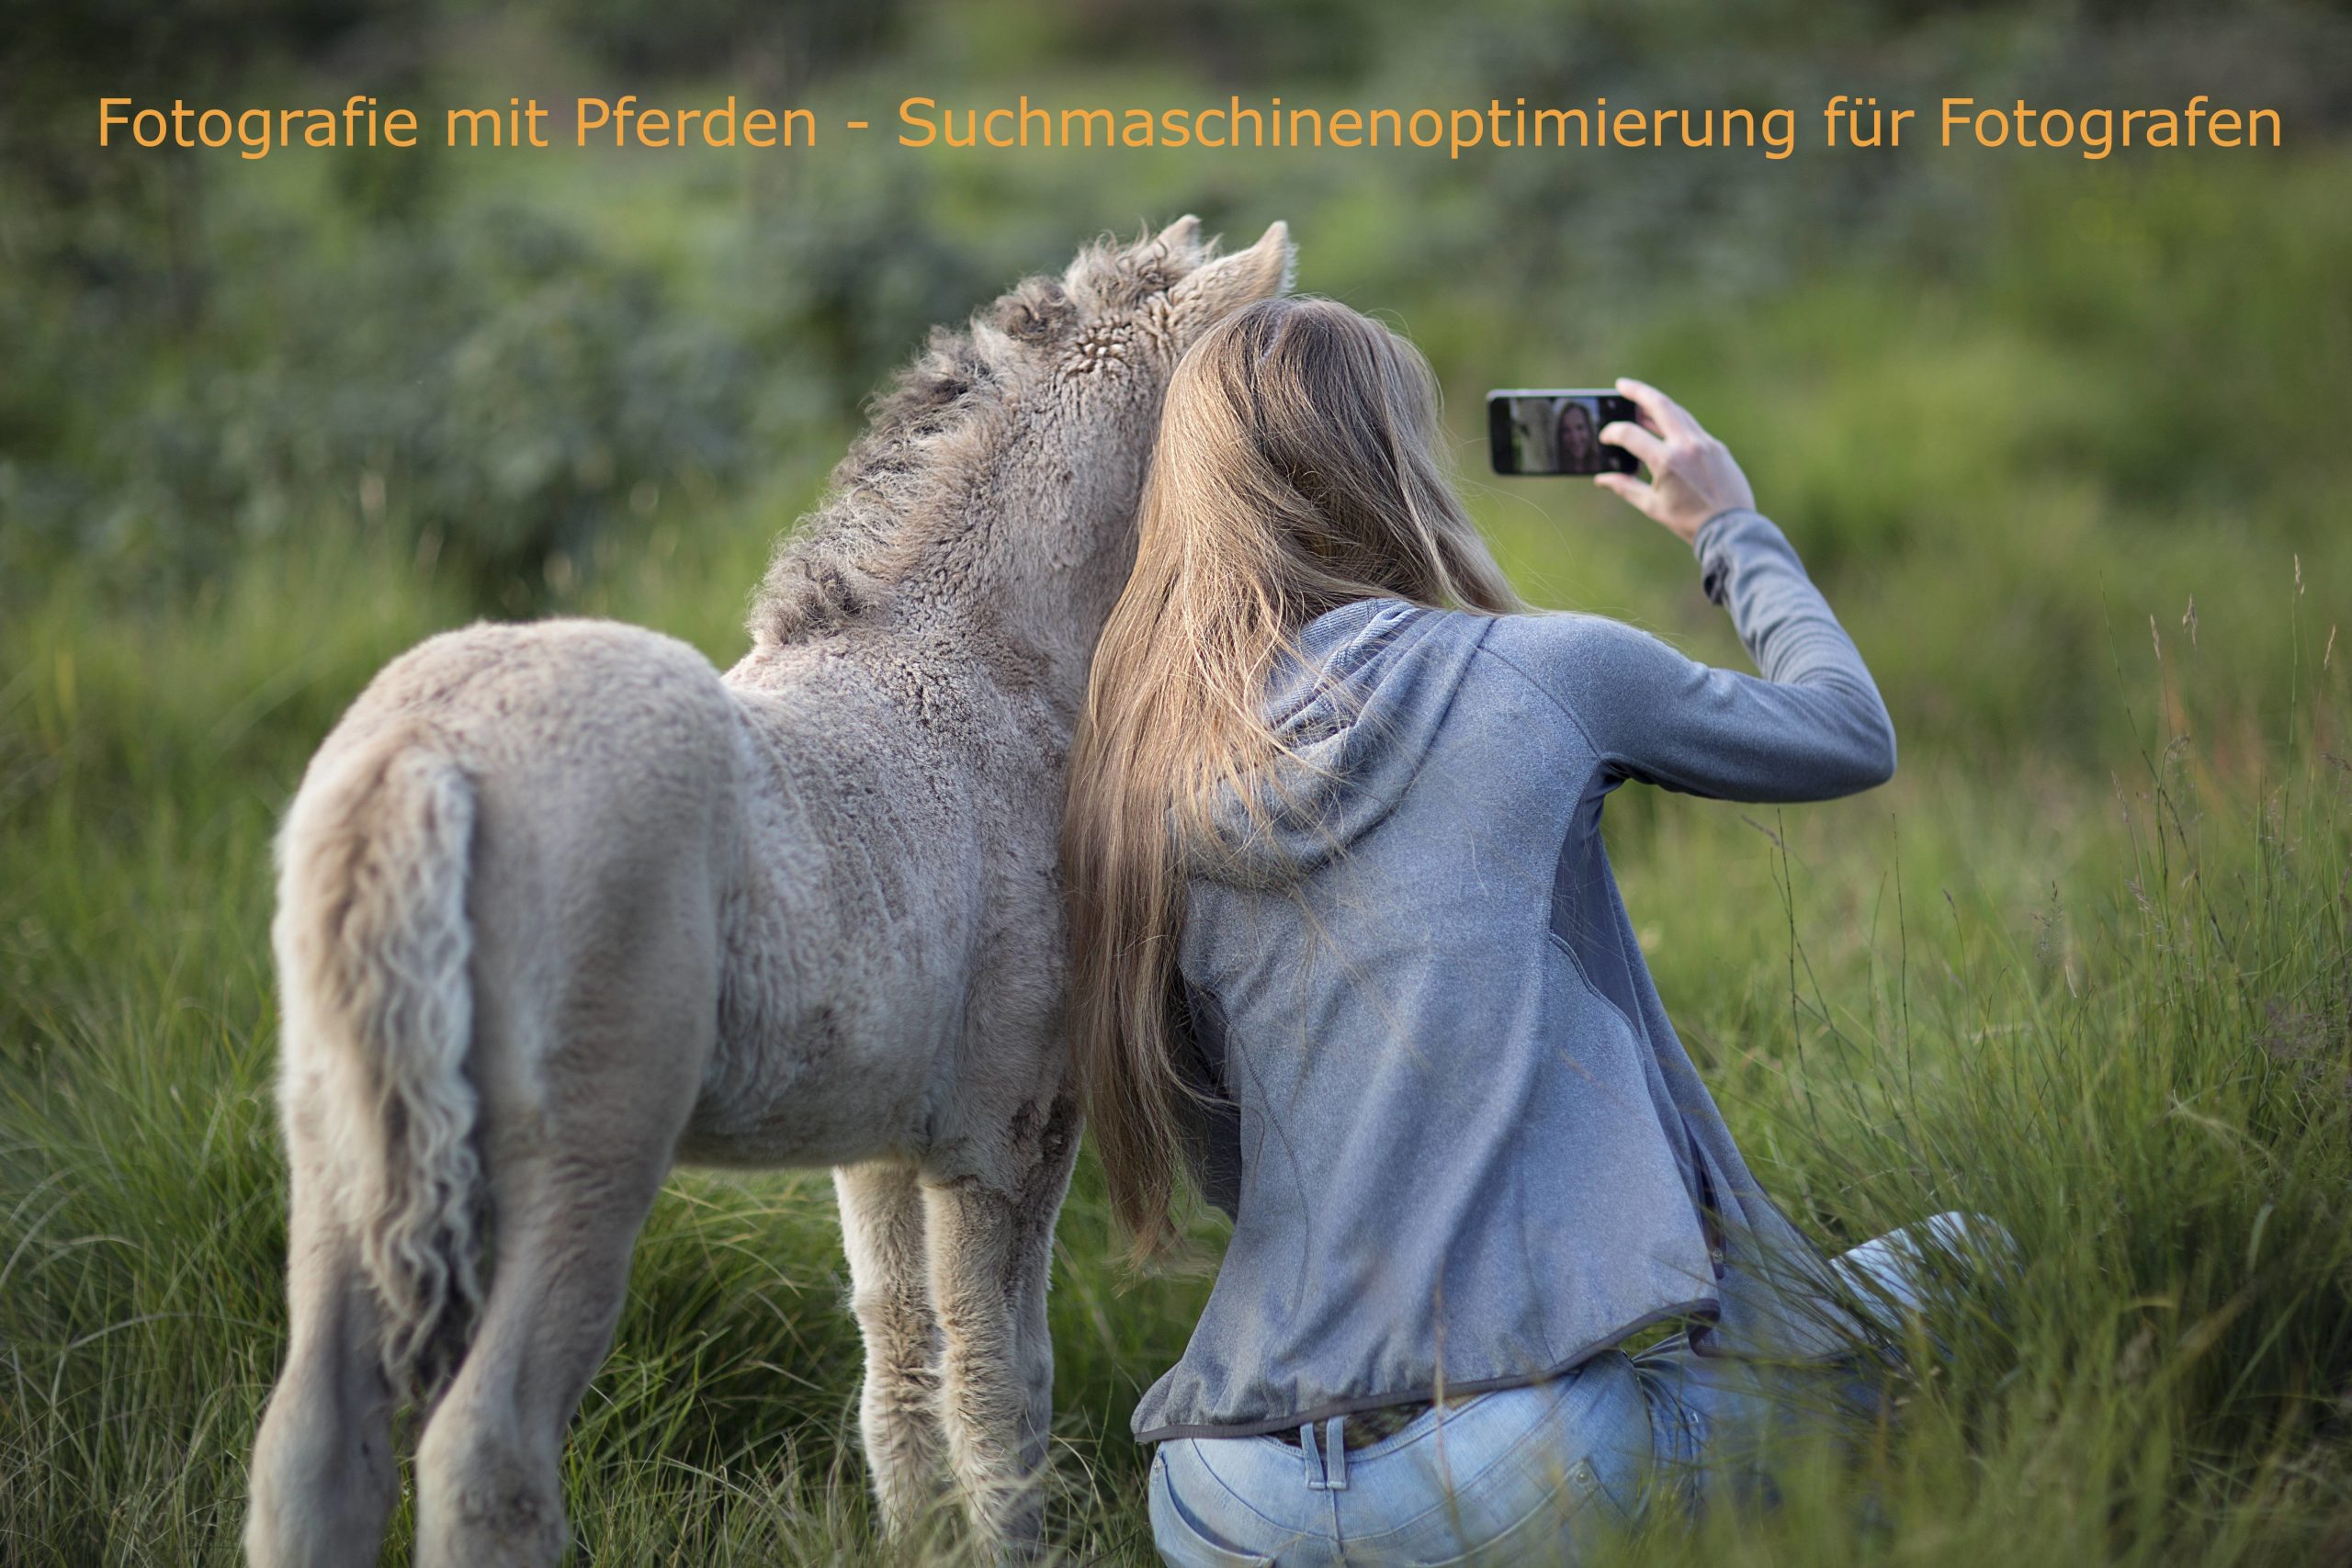 Bild von einer Frau die sich und ein Pferd fotografiert mit dem Schriftzug Fotografie mit Pferden – Suchmaschinenoptimierung für Fotografen